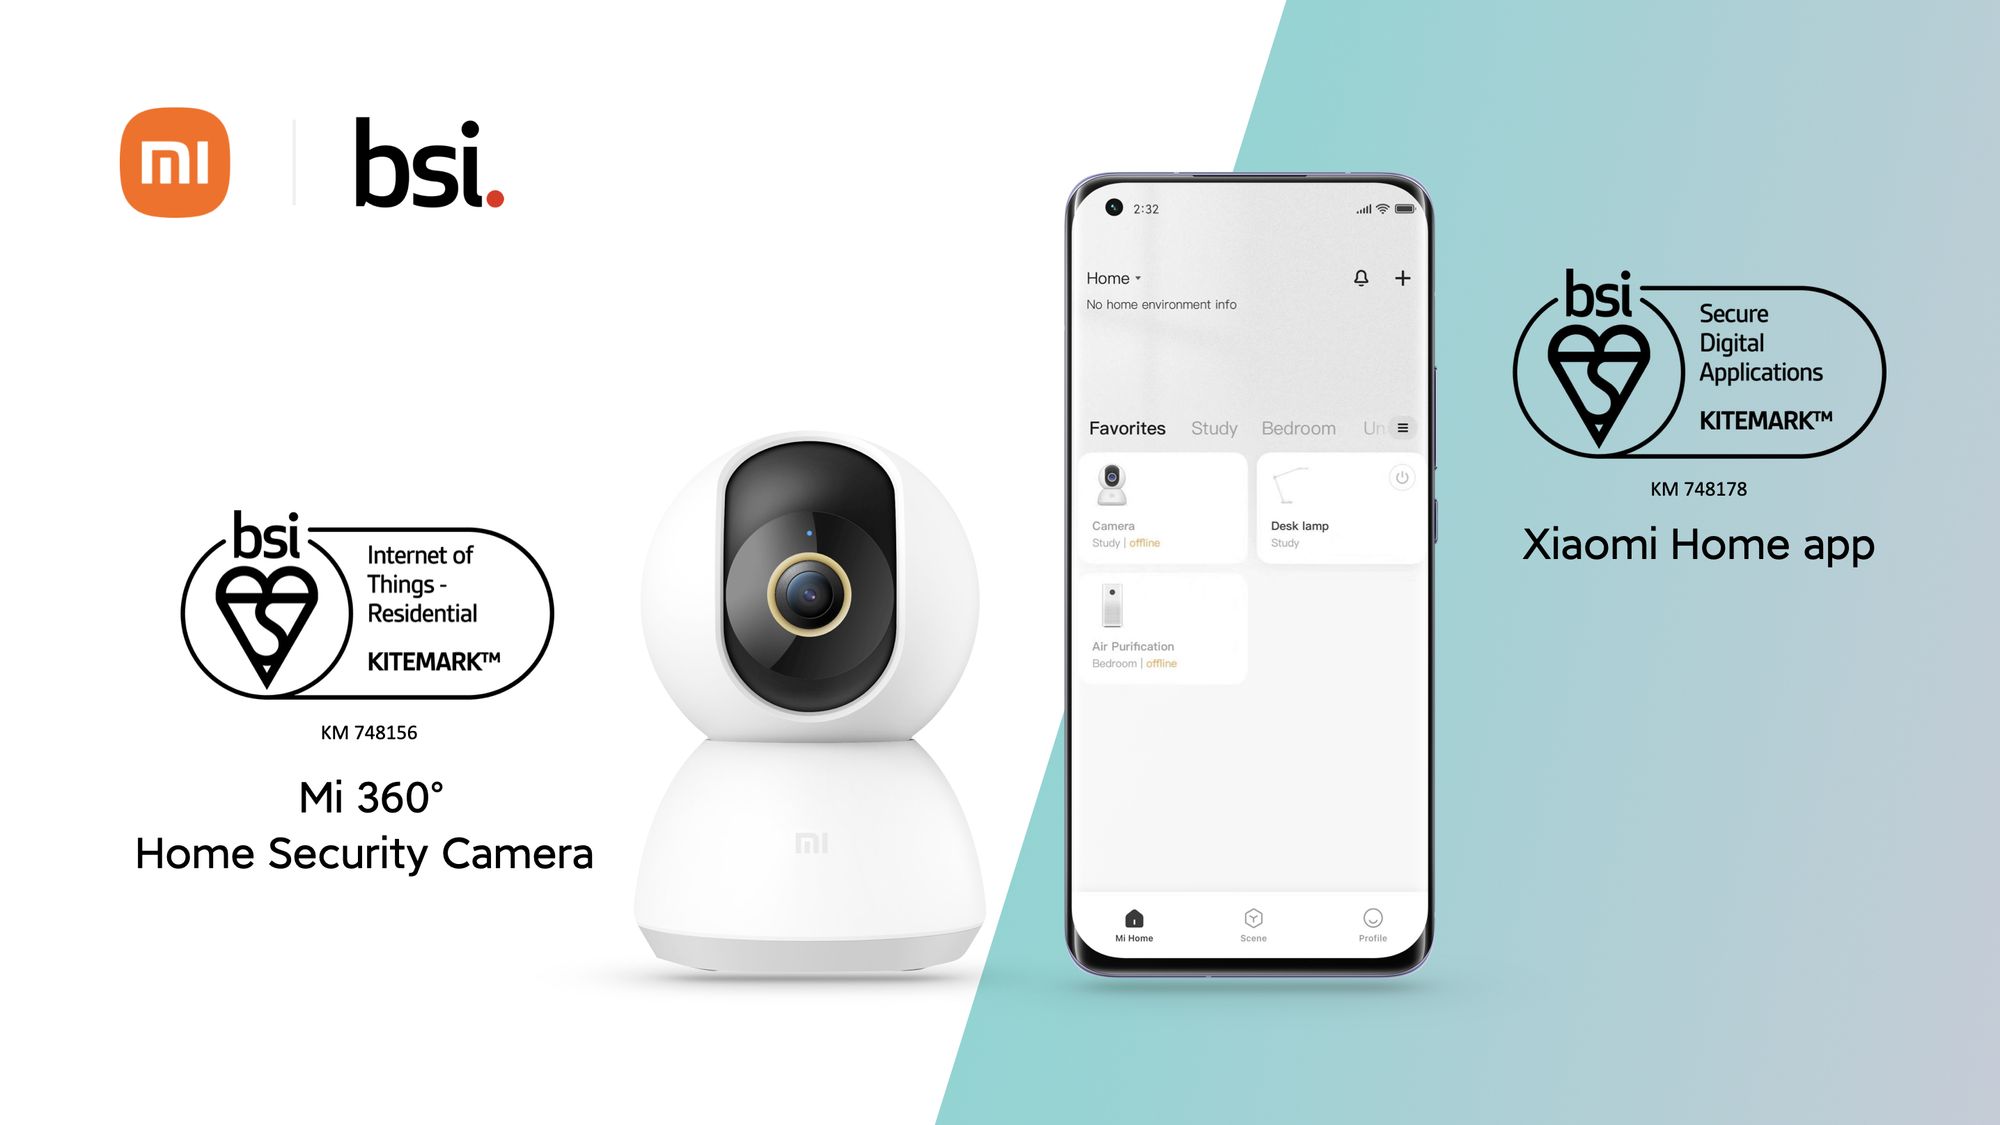 Camera Mi 360° Home Security Camera và ứng dụng Xiaomi Home đạt Chứng nhận BSI Kitemark™